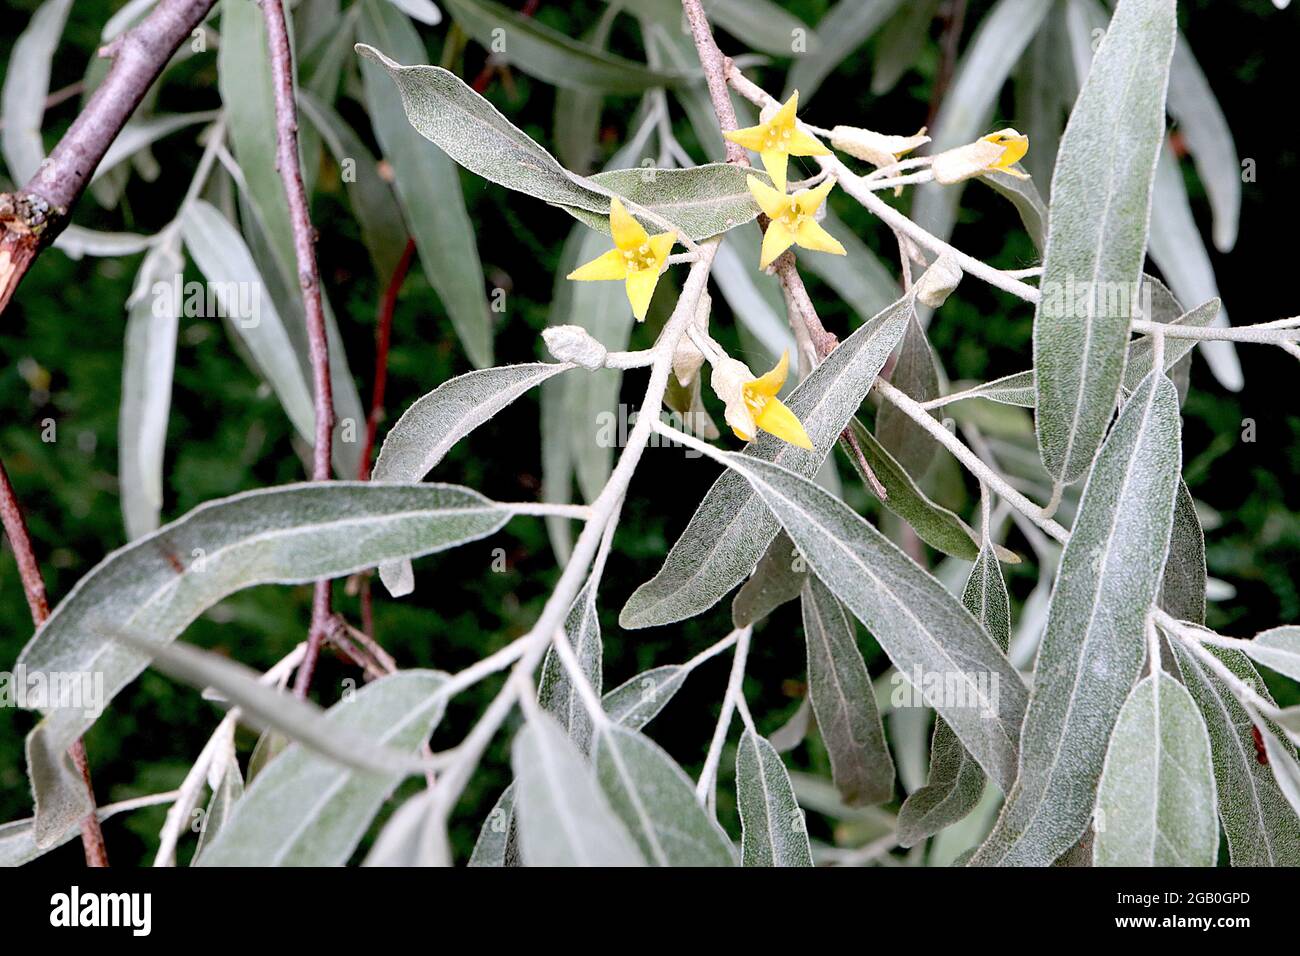 Elaeagnus angustifolia oleaster – gelbe Blüten und silbergraue Blätter, Juni, England, Großbritannien Stockfoto